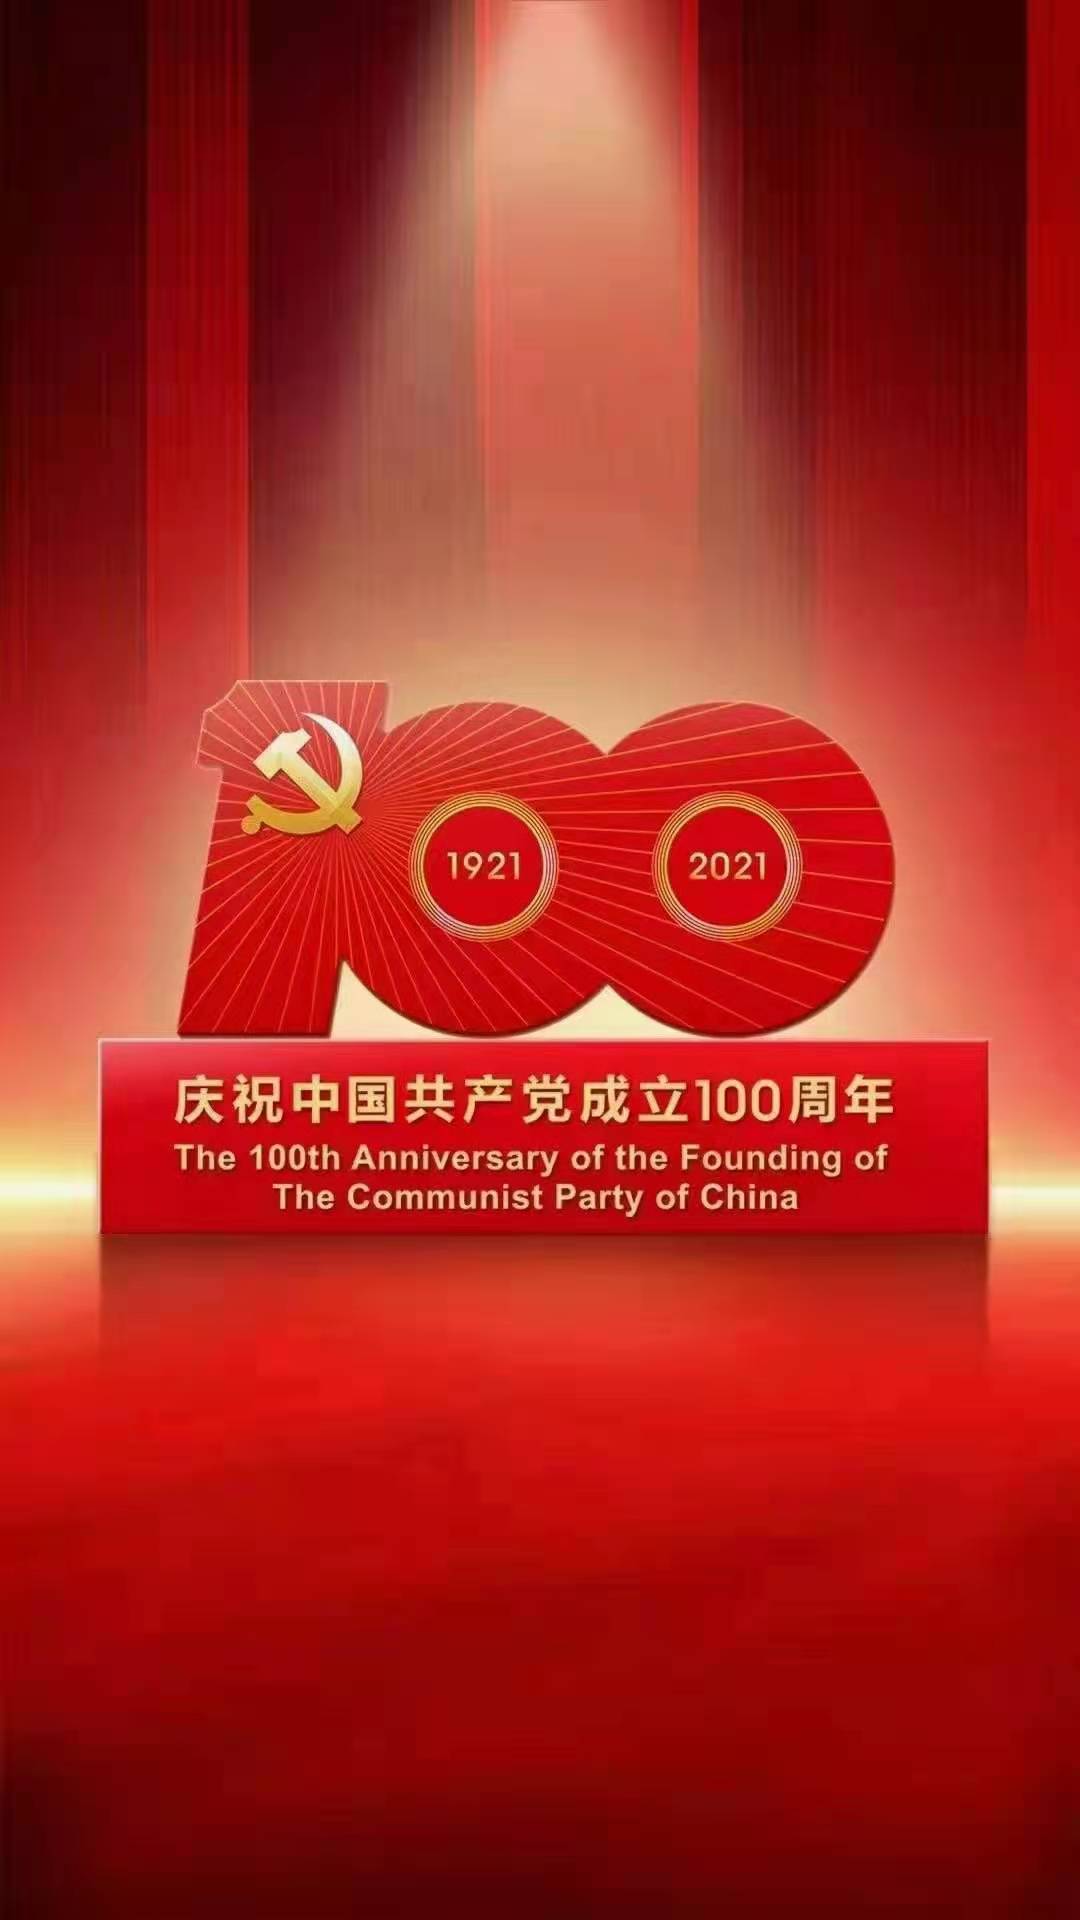 الاحتفال بمرور 100 عام على تأسيس الحزب الشيوعي الصيني